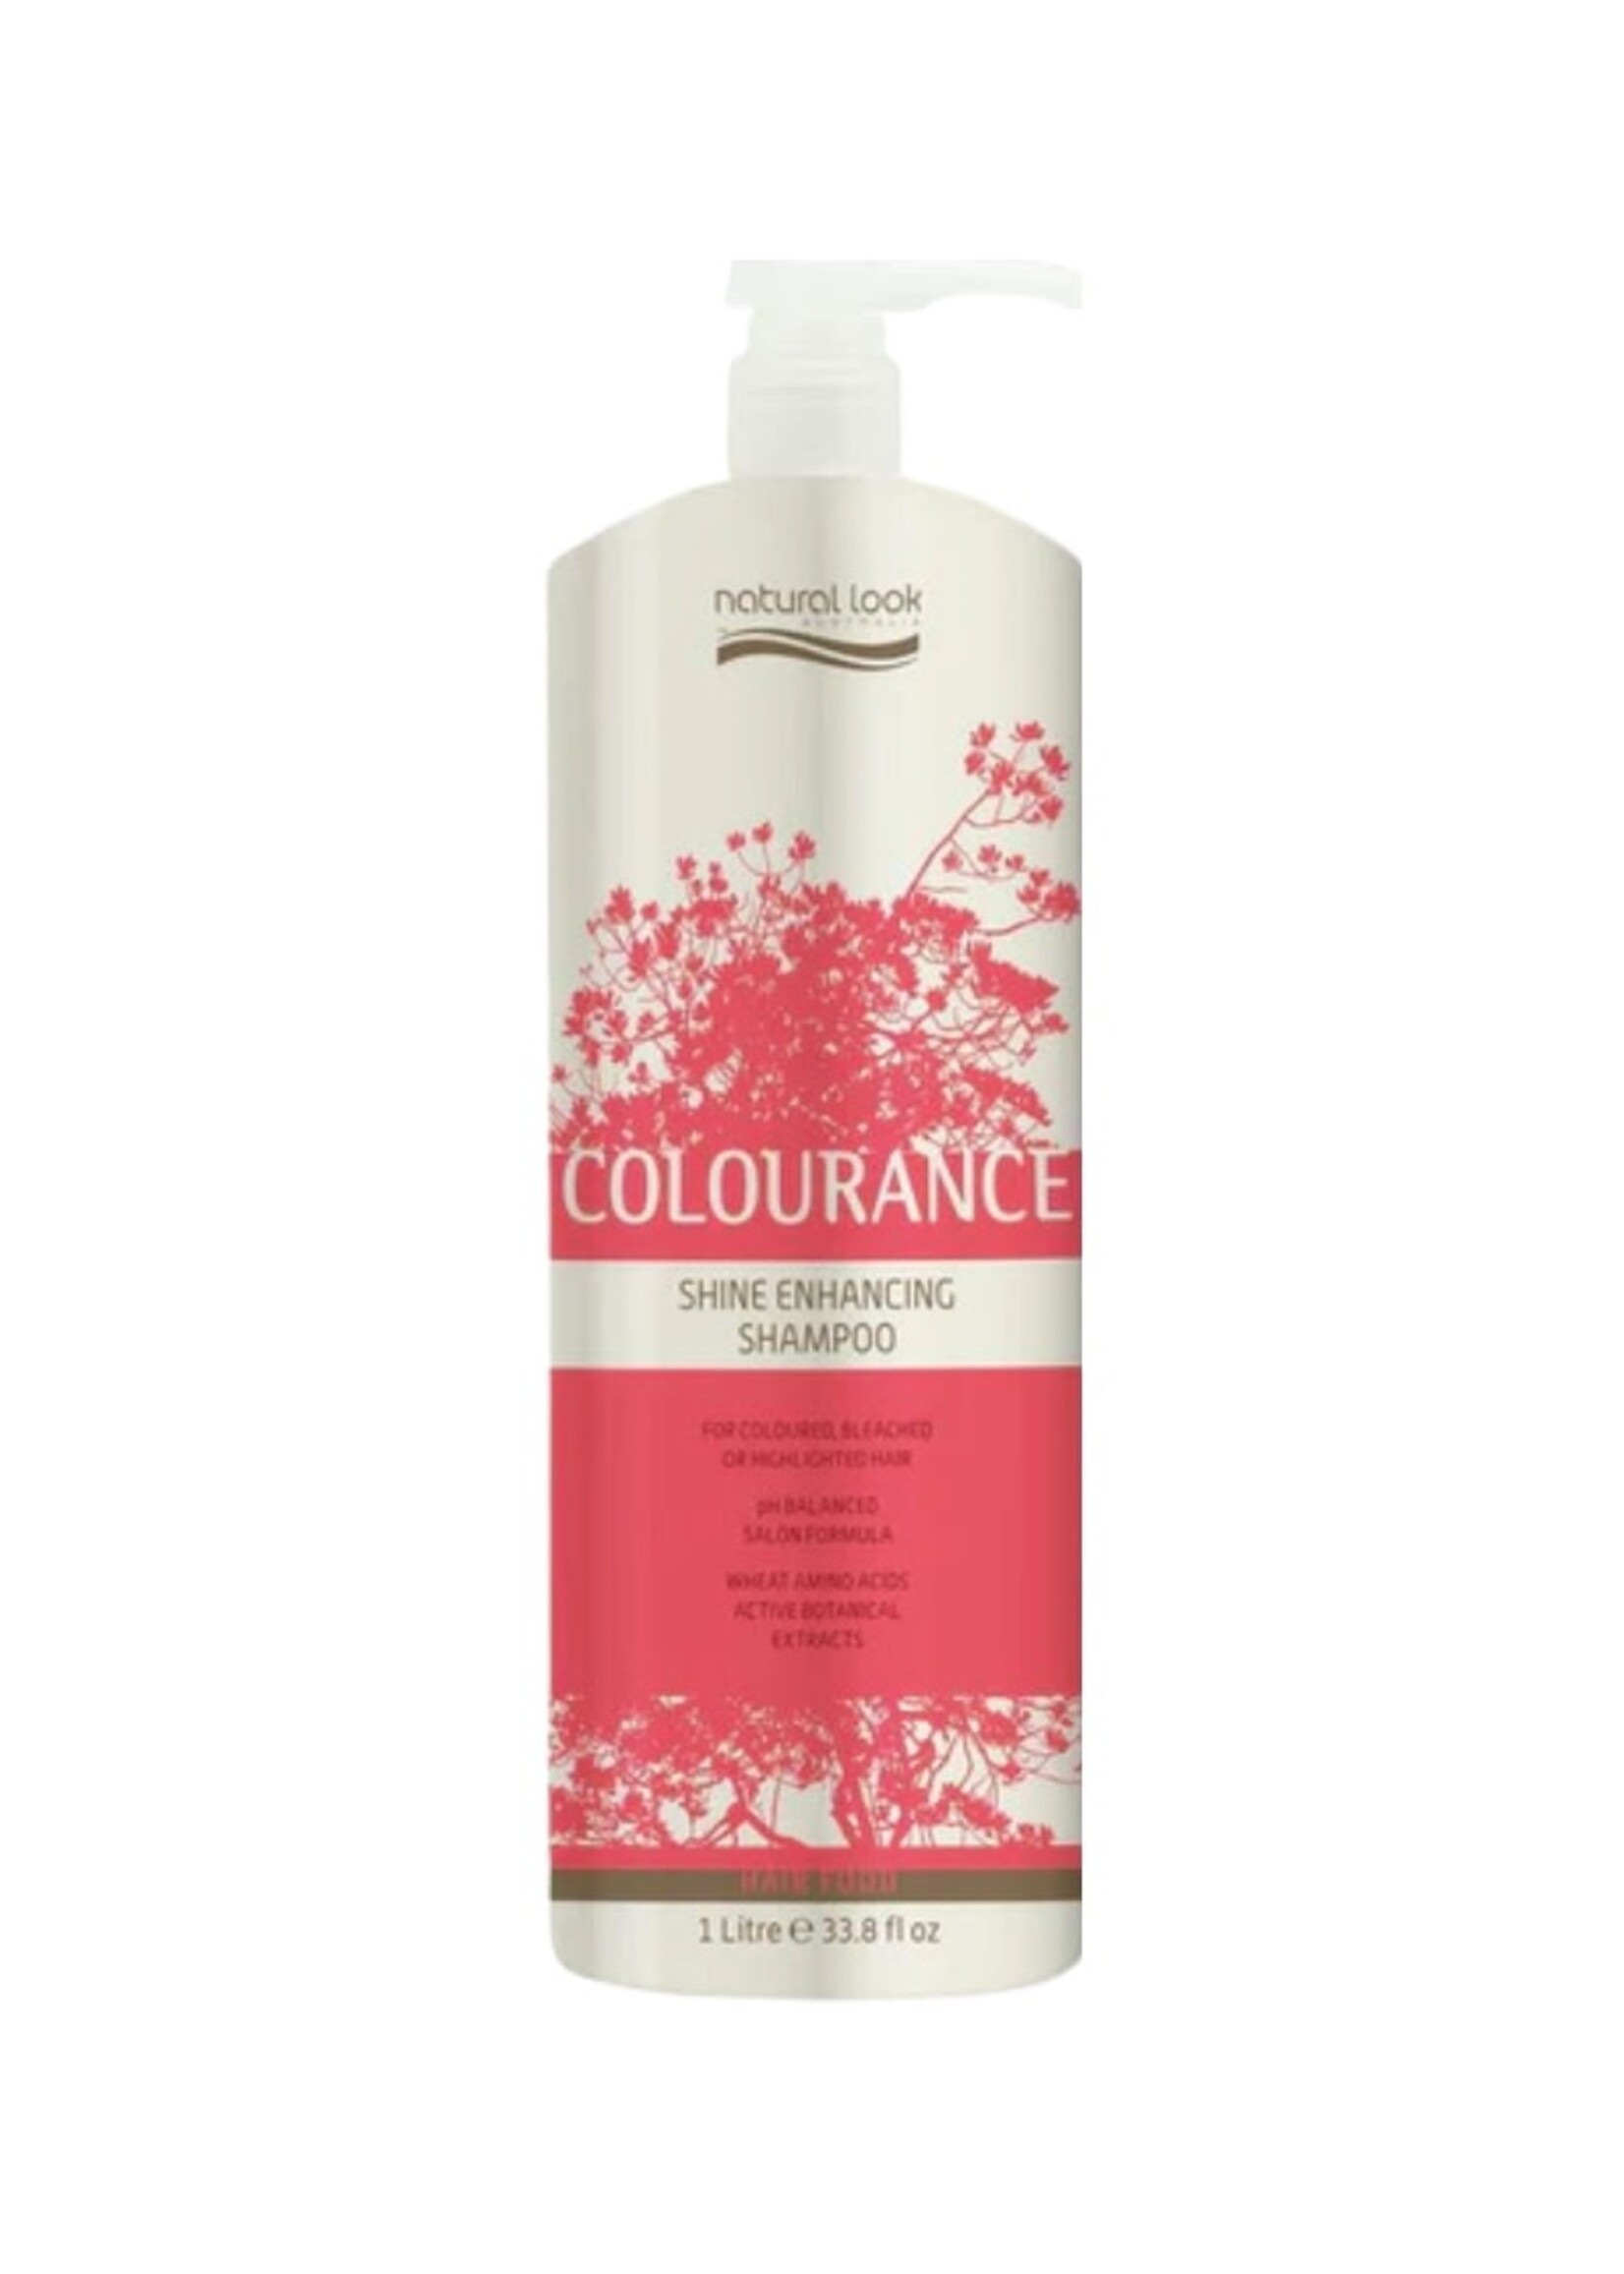 Natural Look Natural Look Colourance Shine Enhancing Shampoo 1L